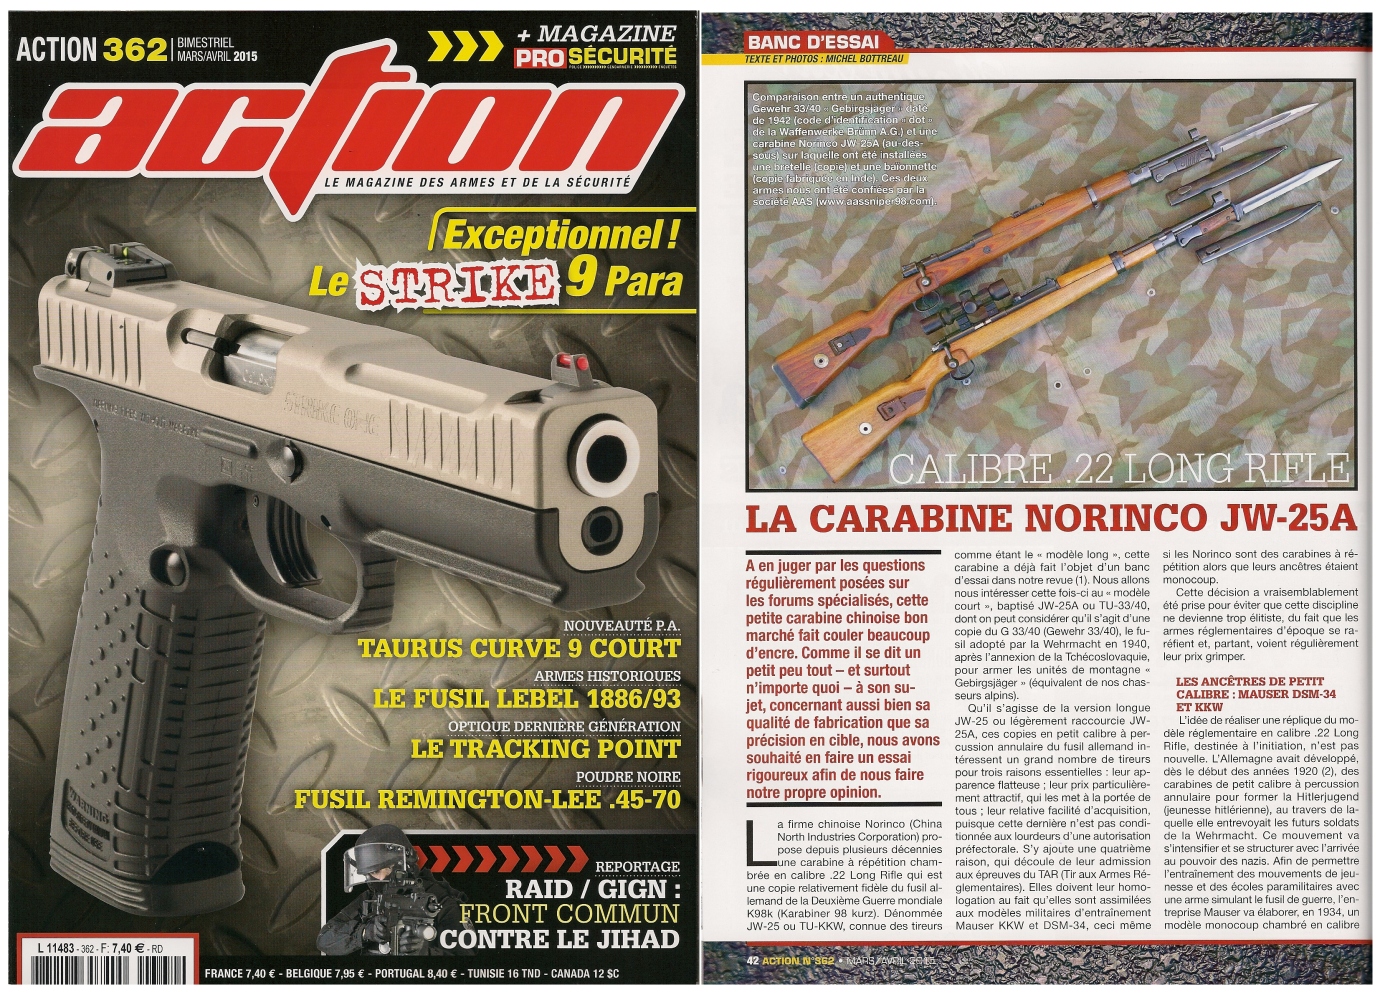 Le banc d’essai de la carabine Norinco JW-25A a été publié sur 6 pages dans le magazine Action n°362 (mars/avril 2015) 